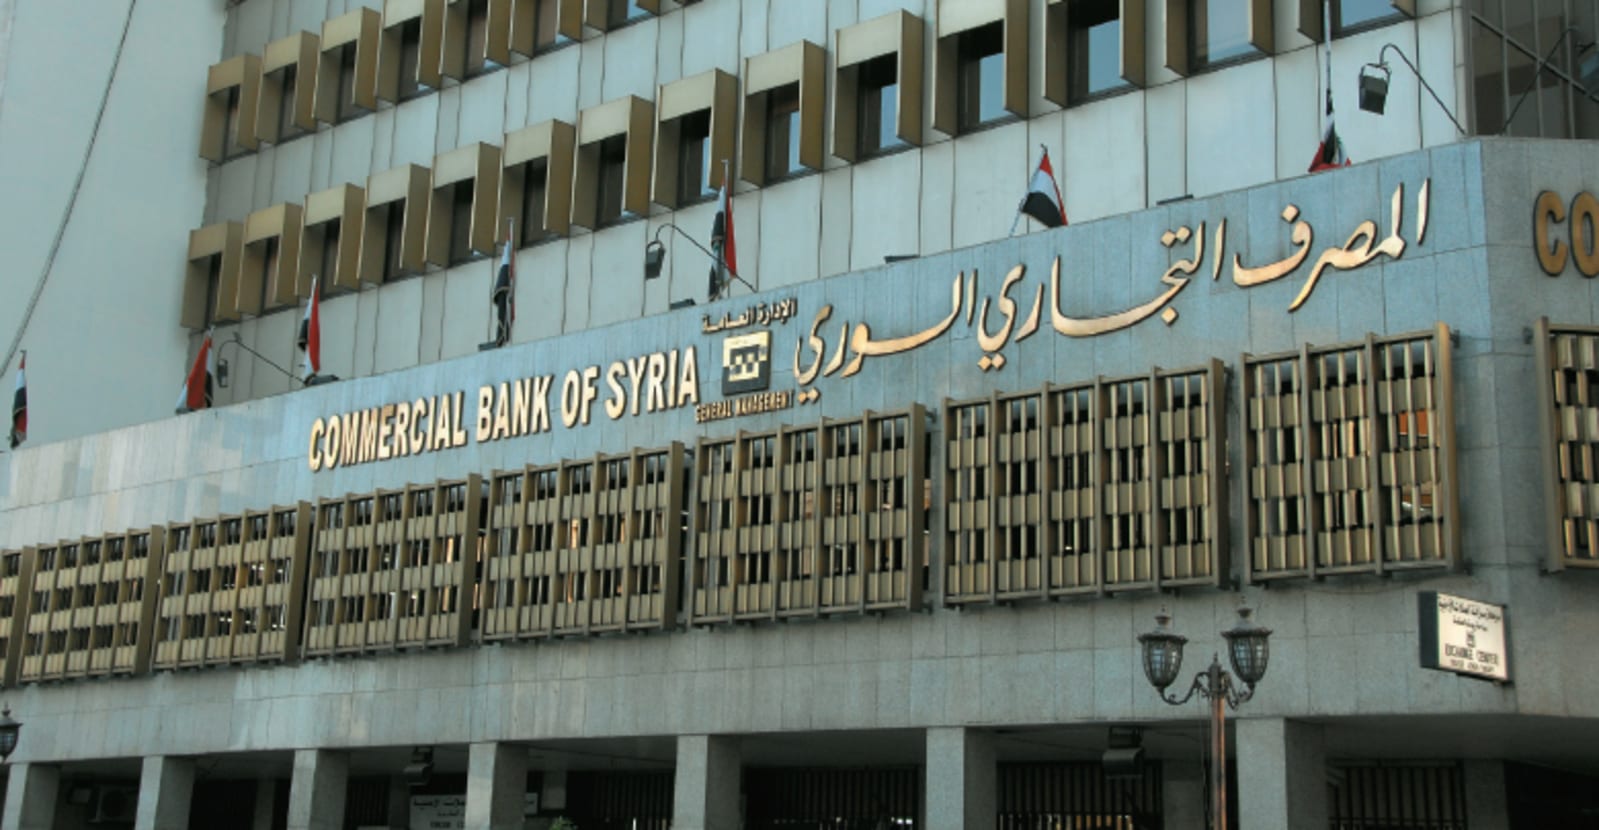 المصرف التجاري السوري يرفع سقف القرض الشخصي إلى 50 مليون ليرة